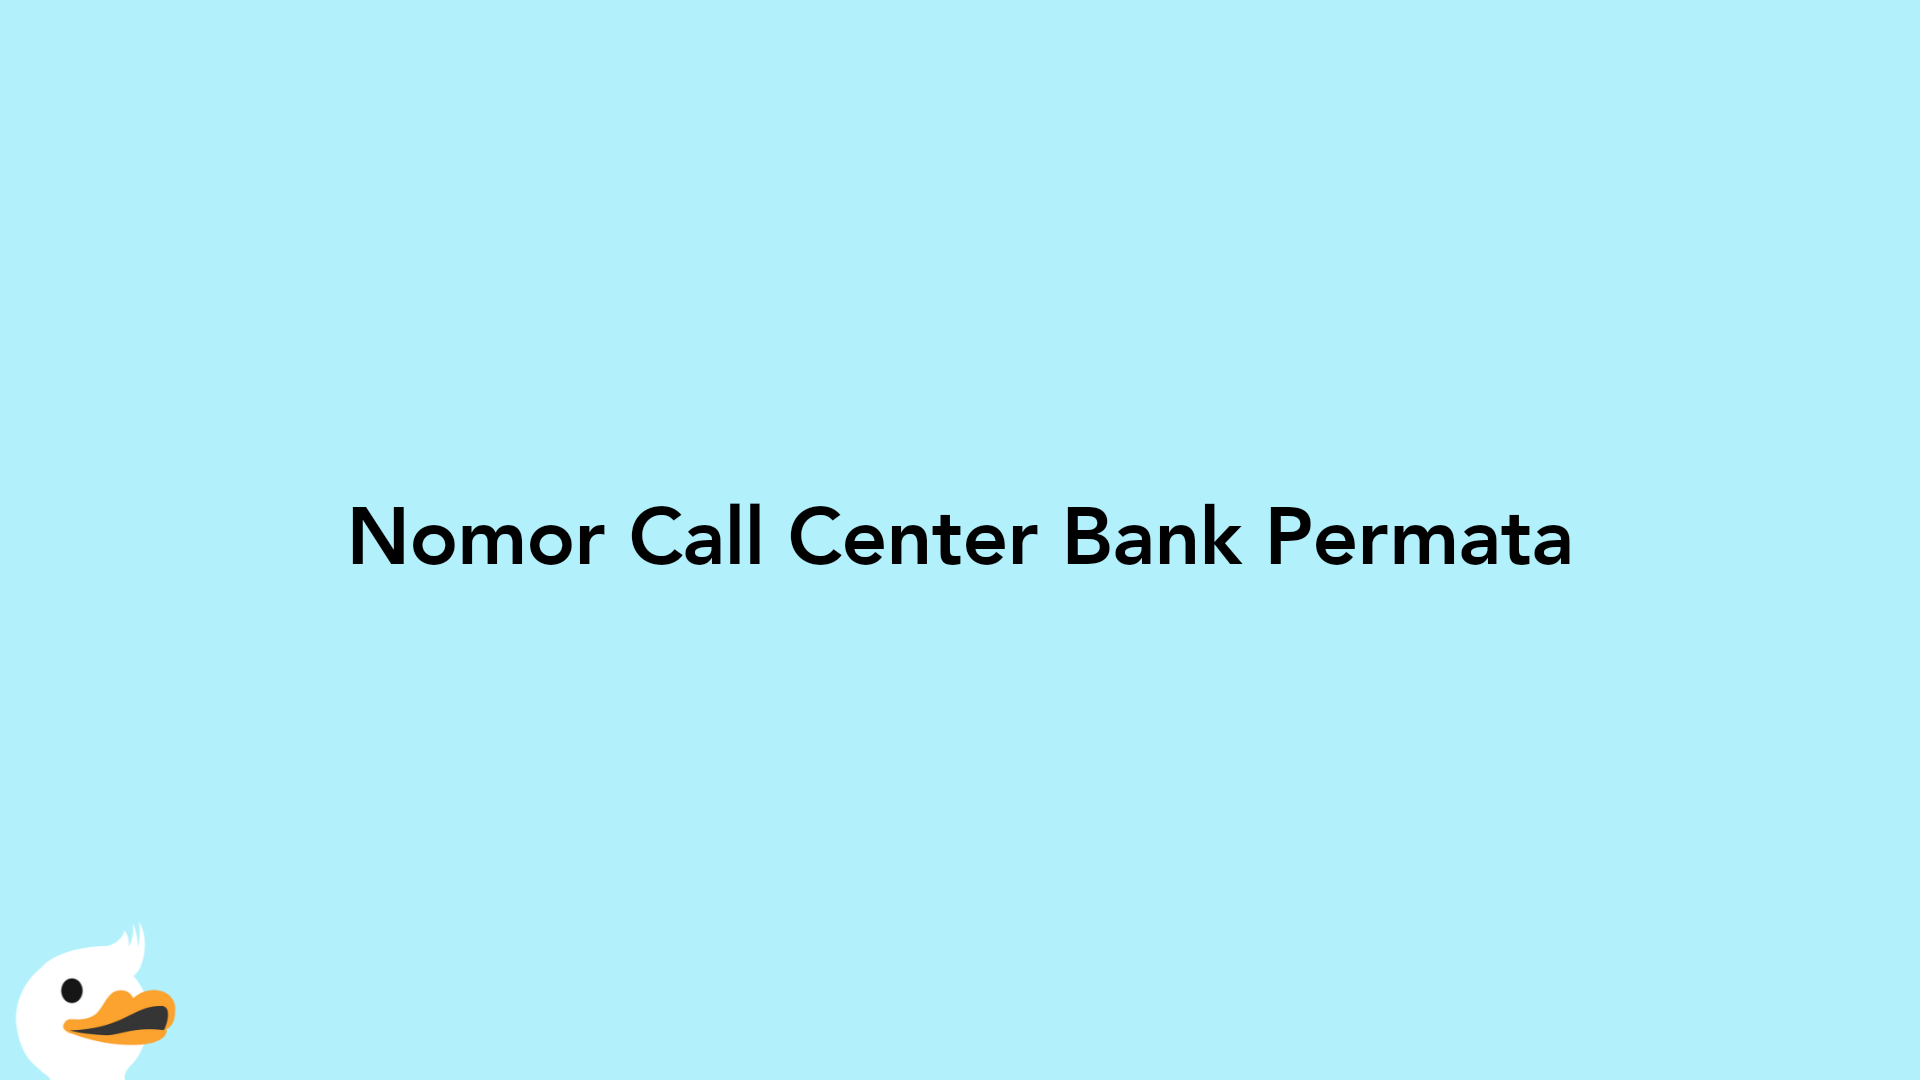 Nomor Call Center Bank Permata